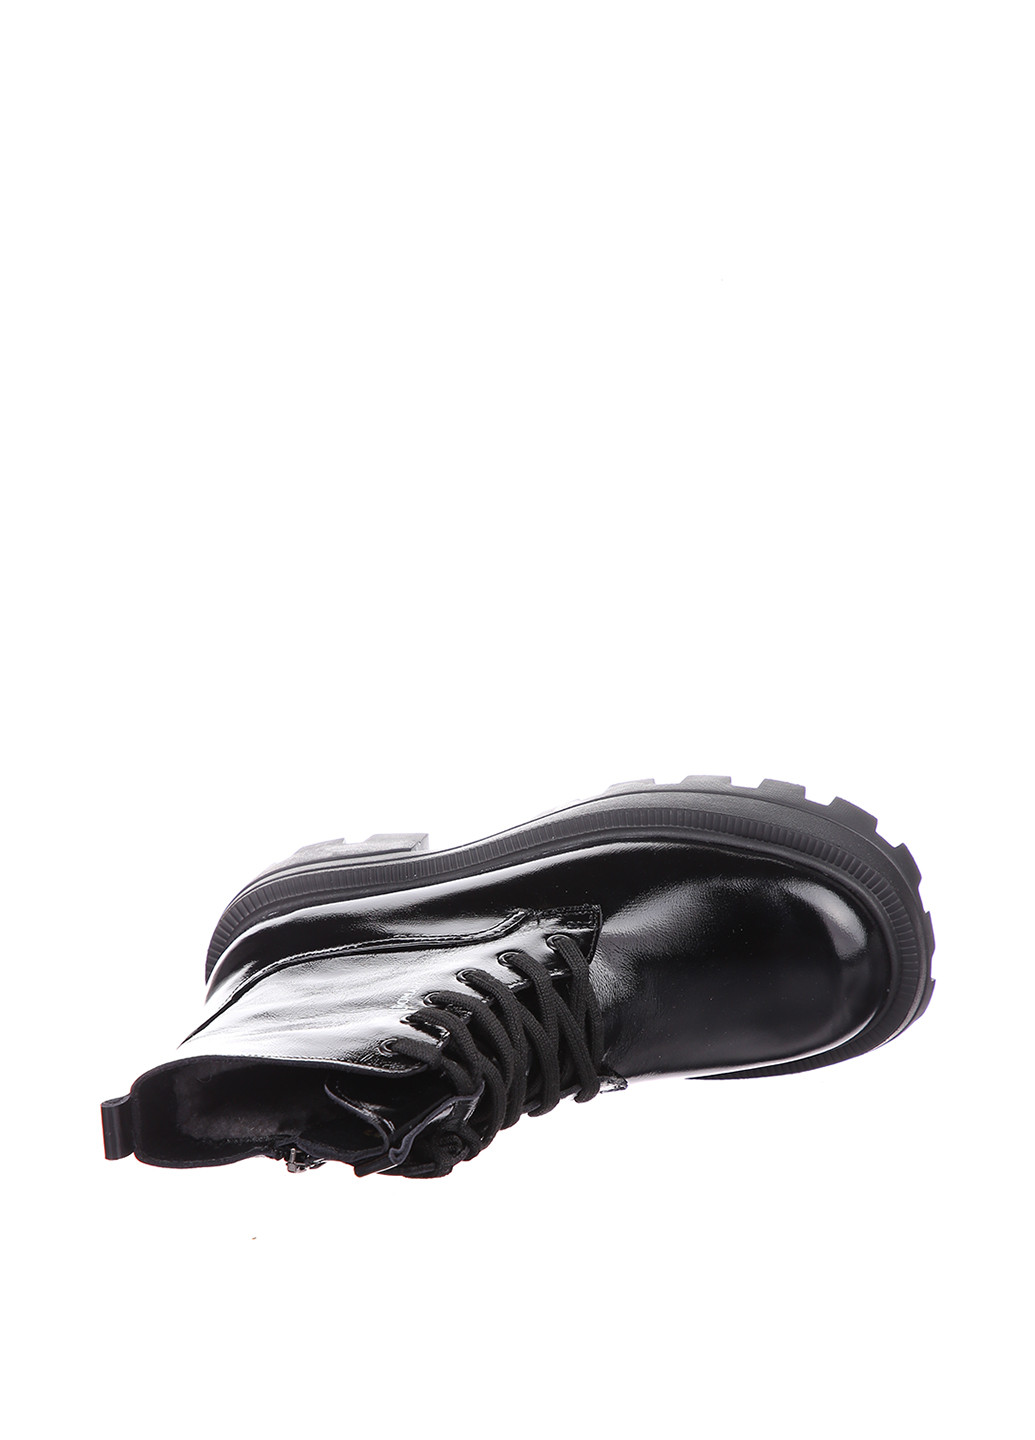 Зимние ботинки Alromaro лаковые, со шнуровкой, на тракторной подошве